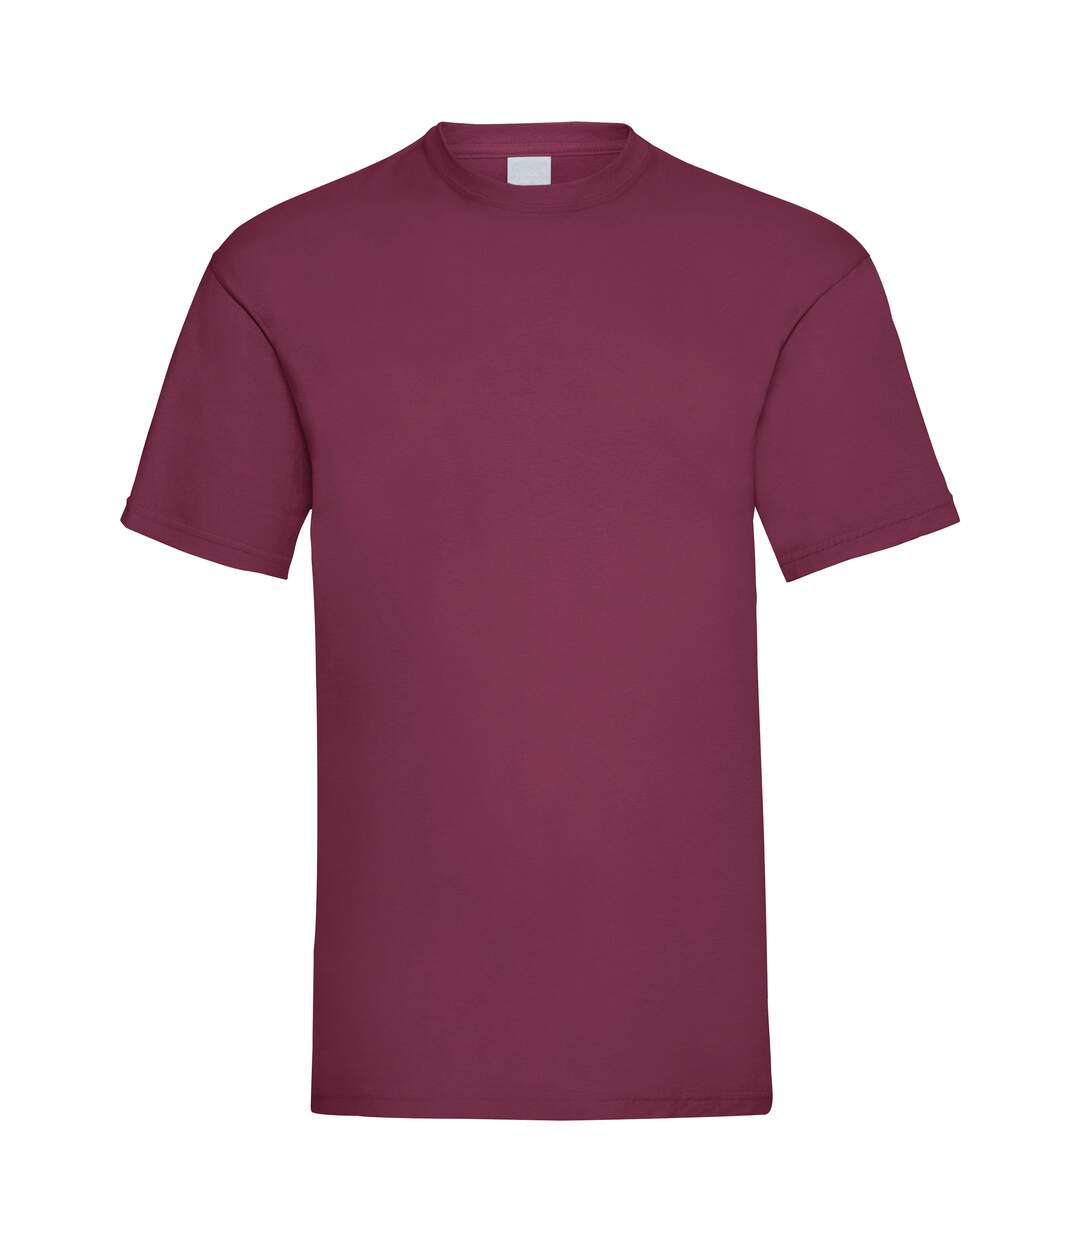 T-shirt à manches courtes - Homme (Rouge sang) - UTBC3900